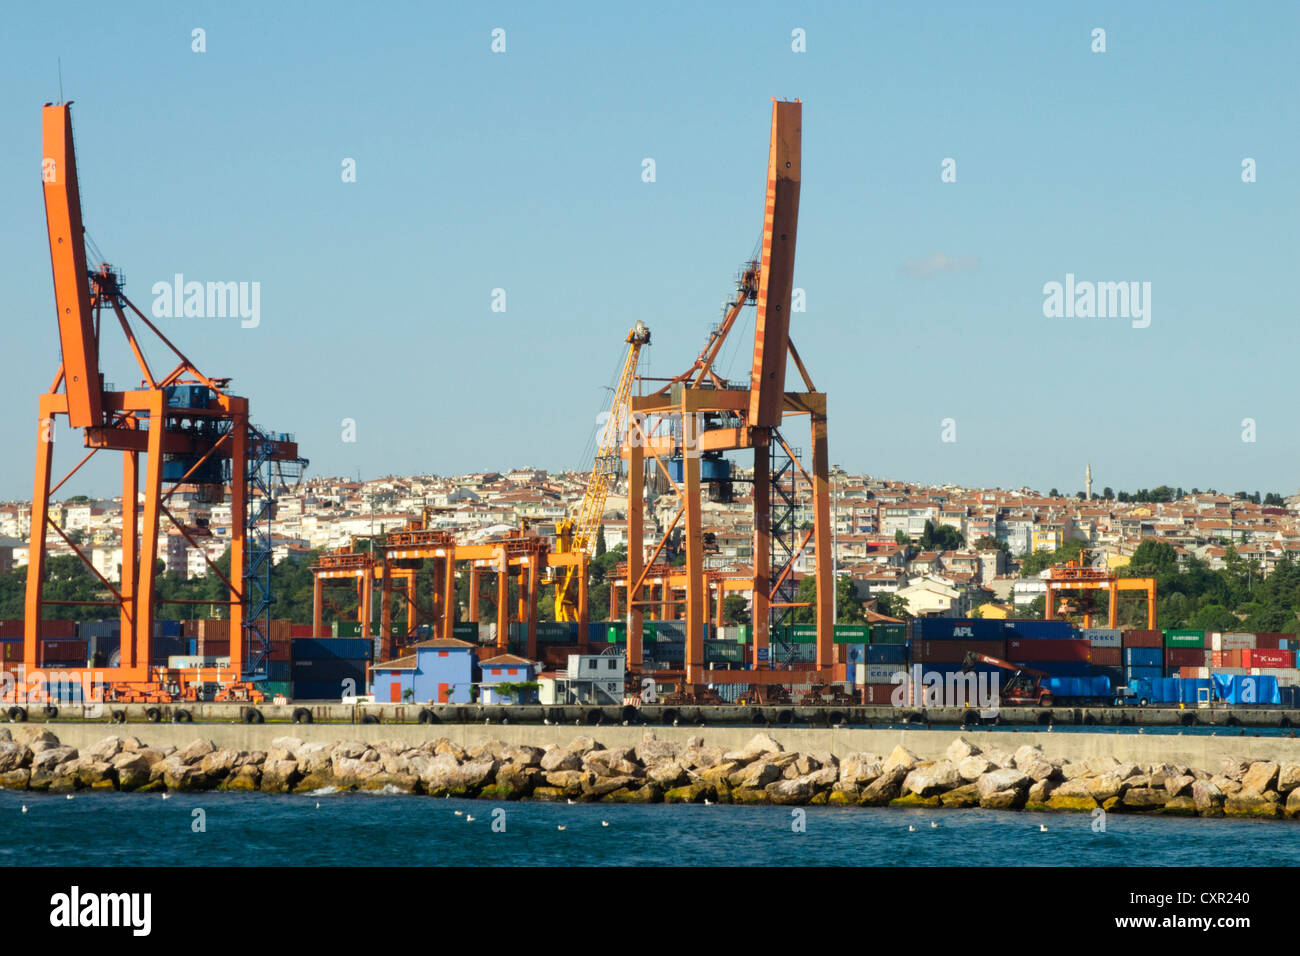 Türkei, Estambul, Üsküdar, Industrie-Hafen Foto de stock